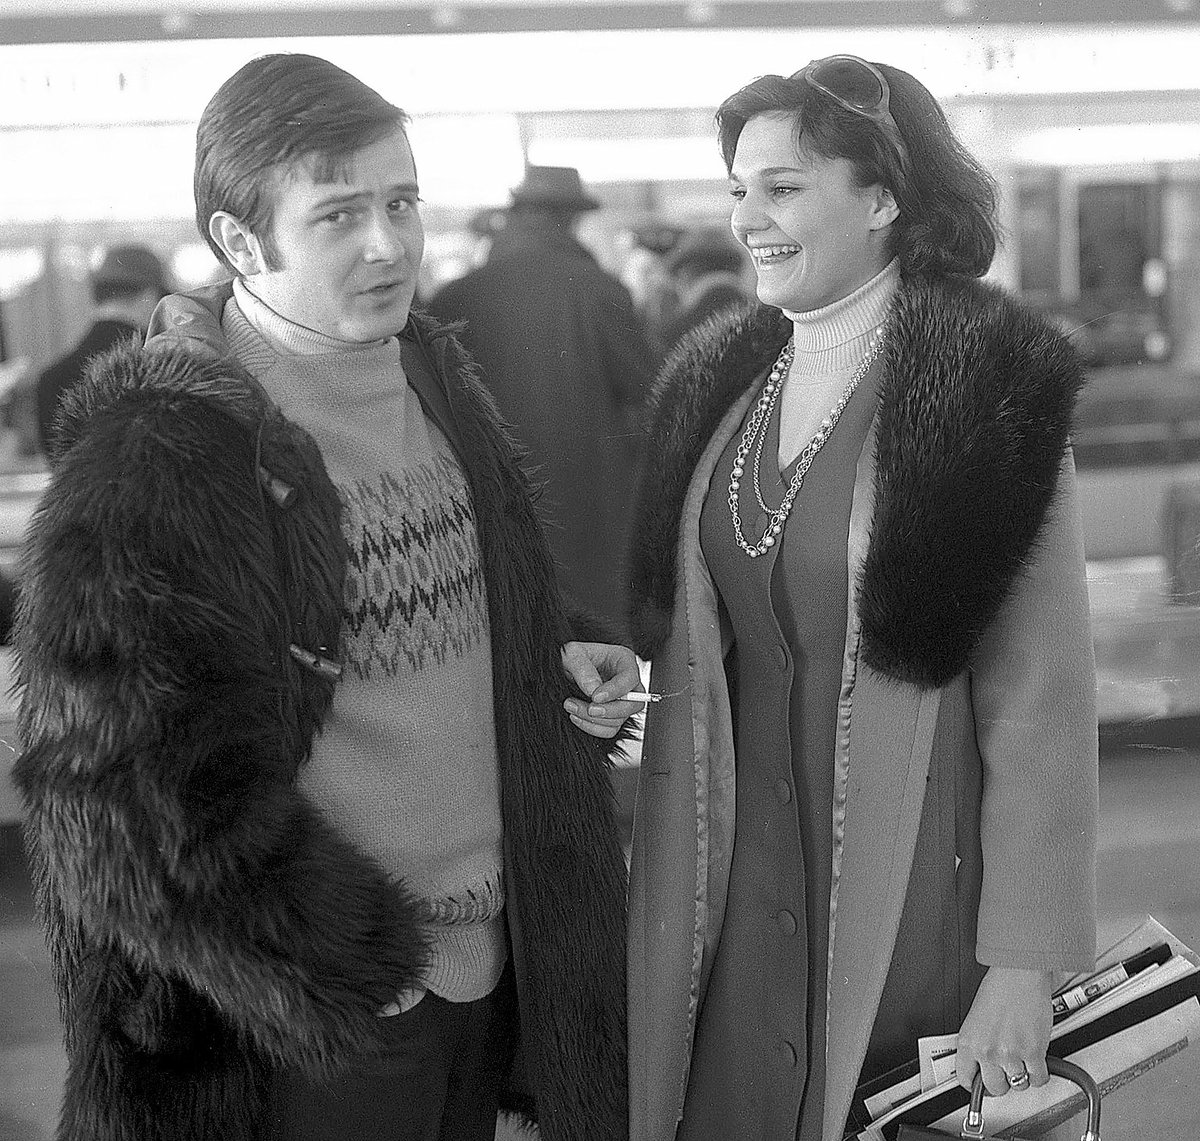 1969 - Jiří Štaidl se loučil na letišti s krasobruslařkou Hanou Maškovou před jejím odletem na MS do Colorada.